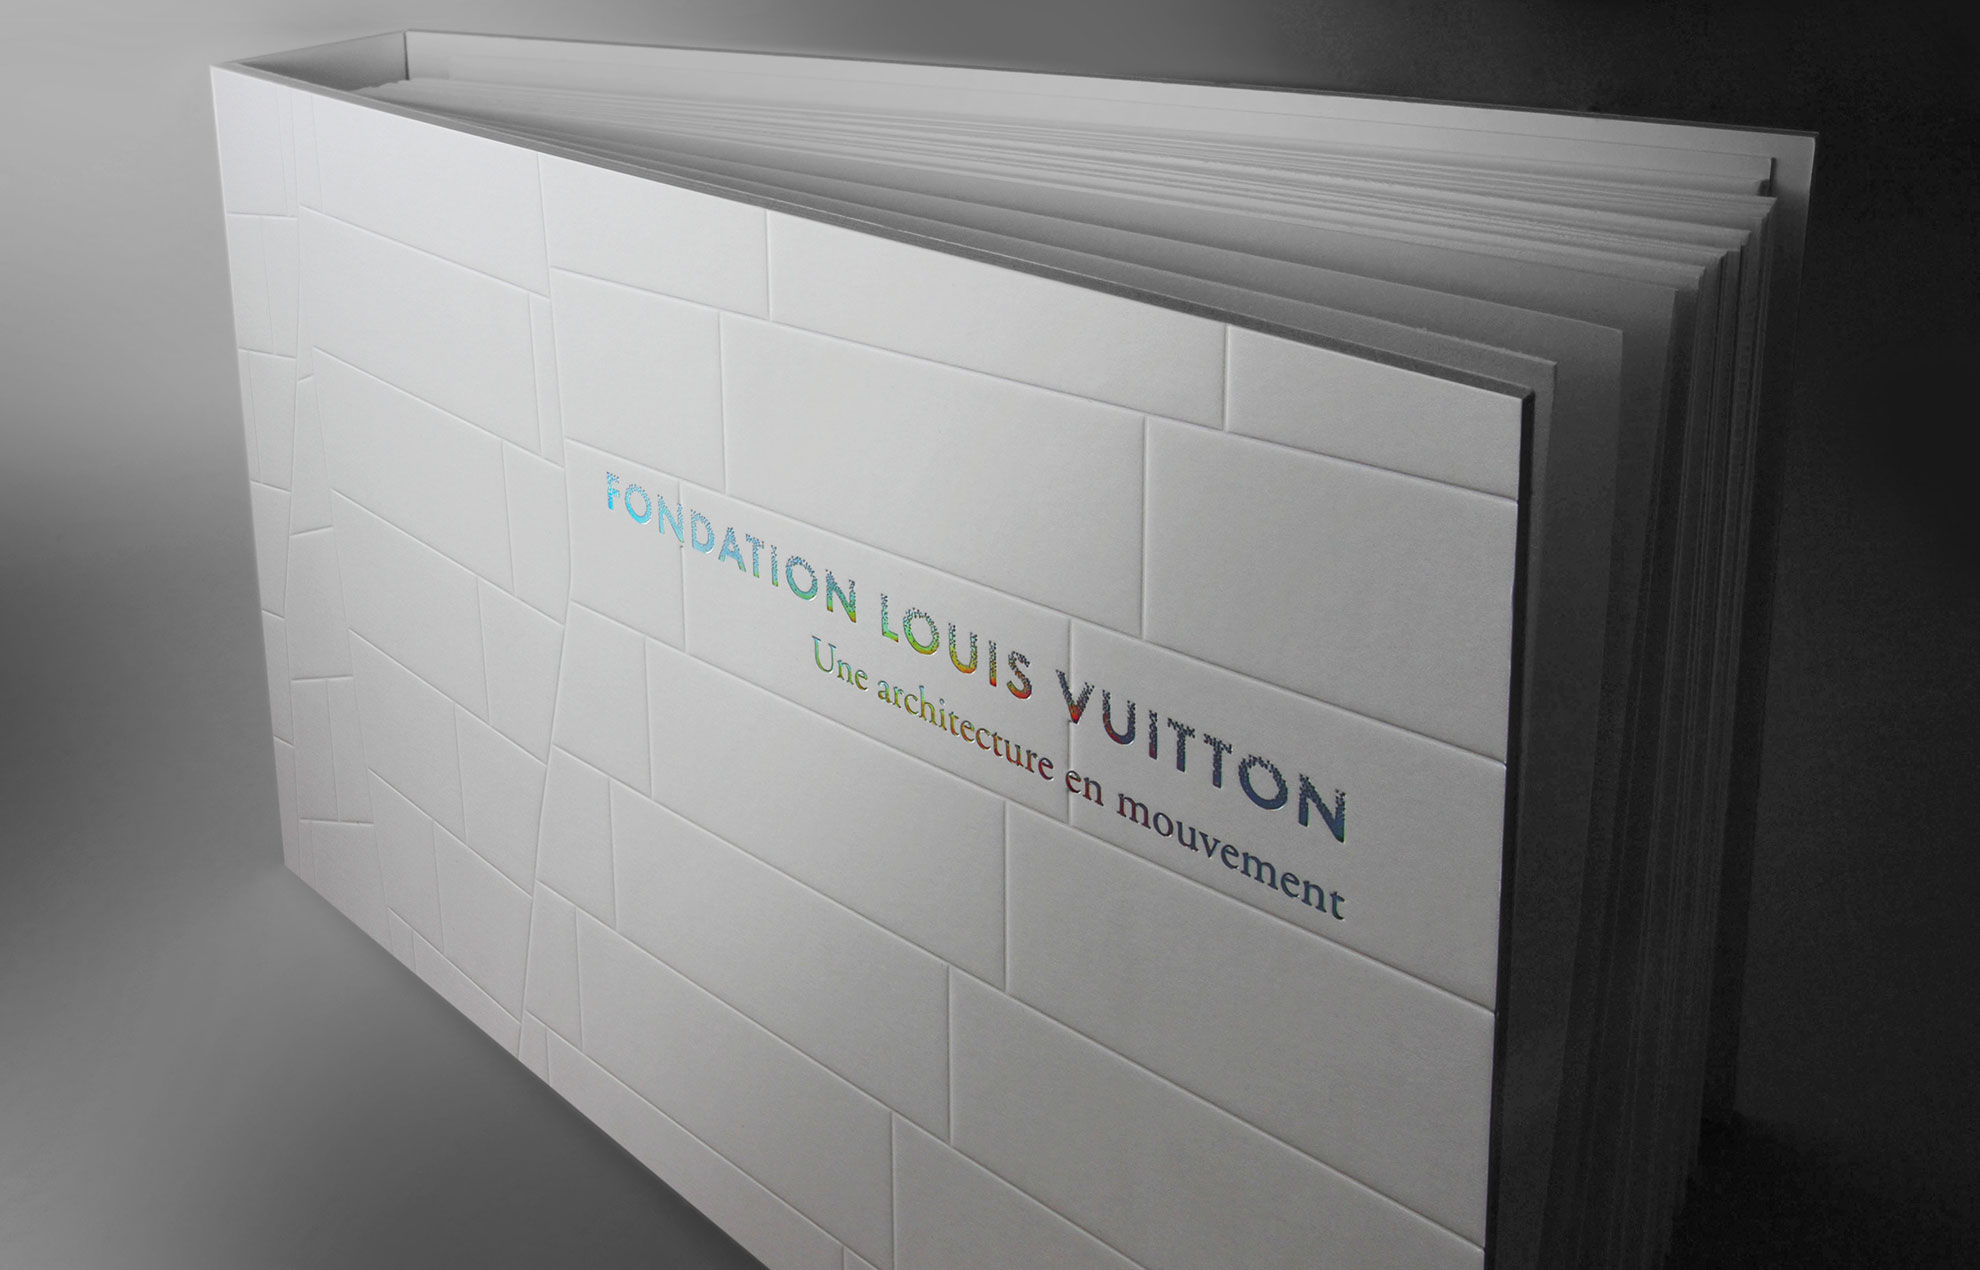 Une Architecture en mouvement - Fondation Louis Vuitton